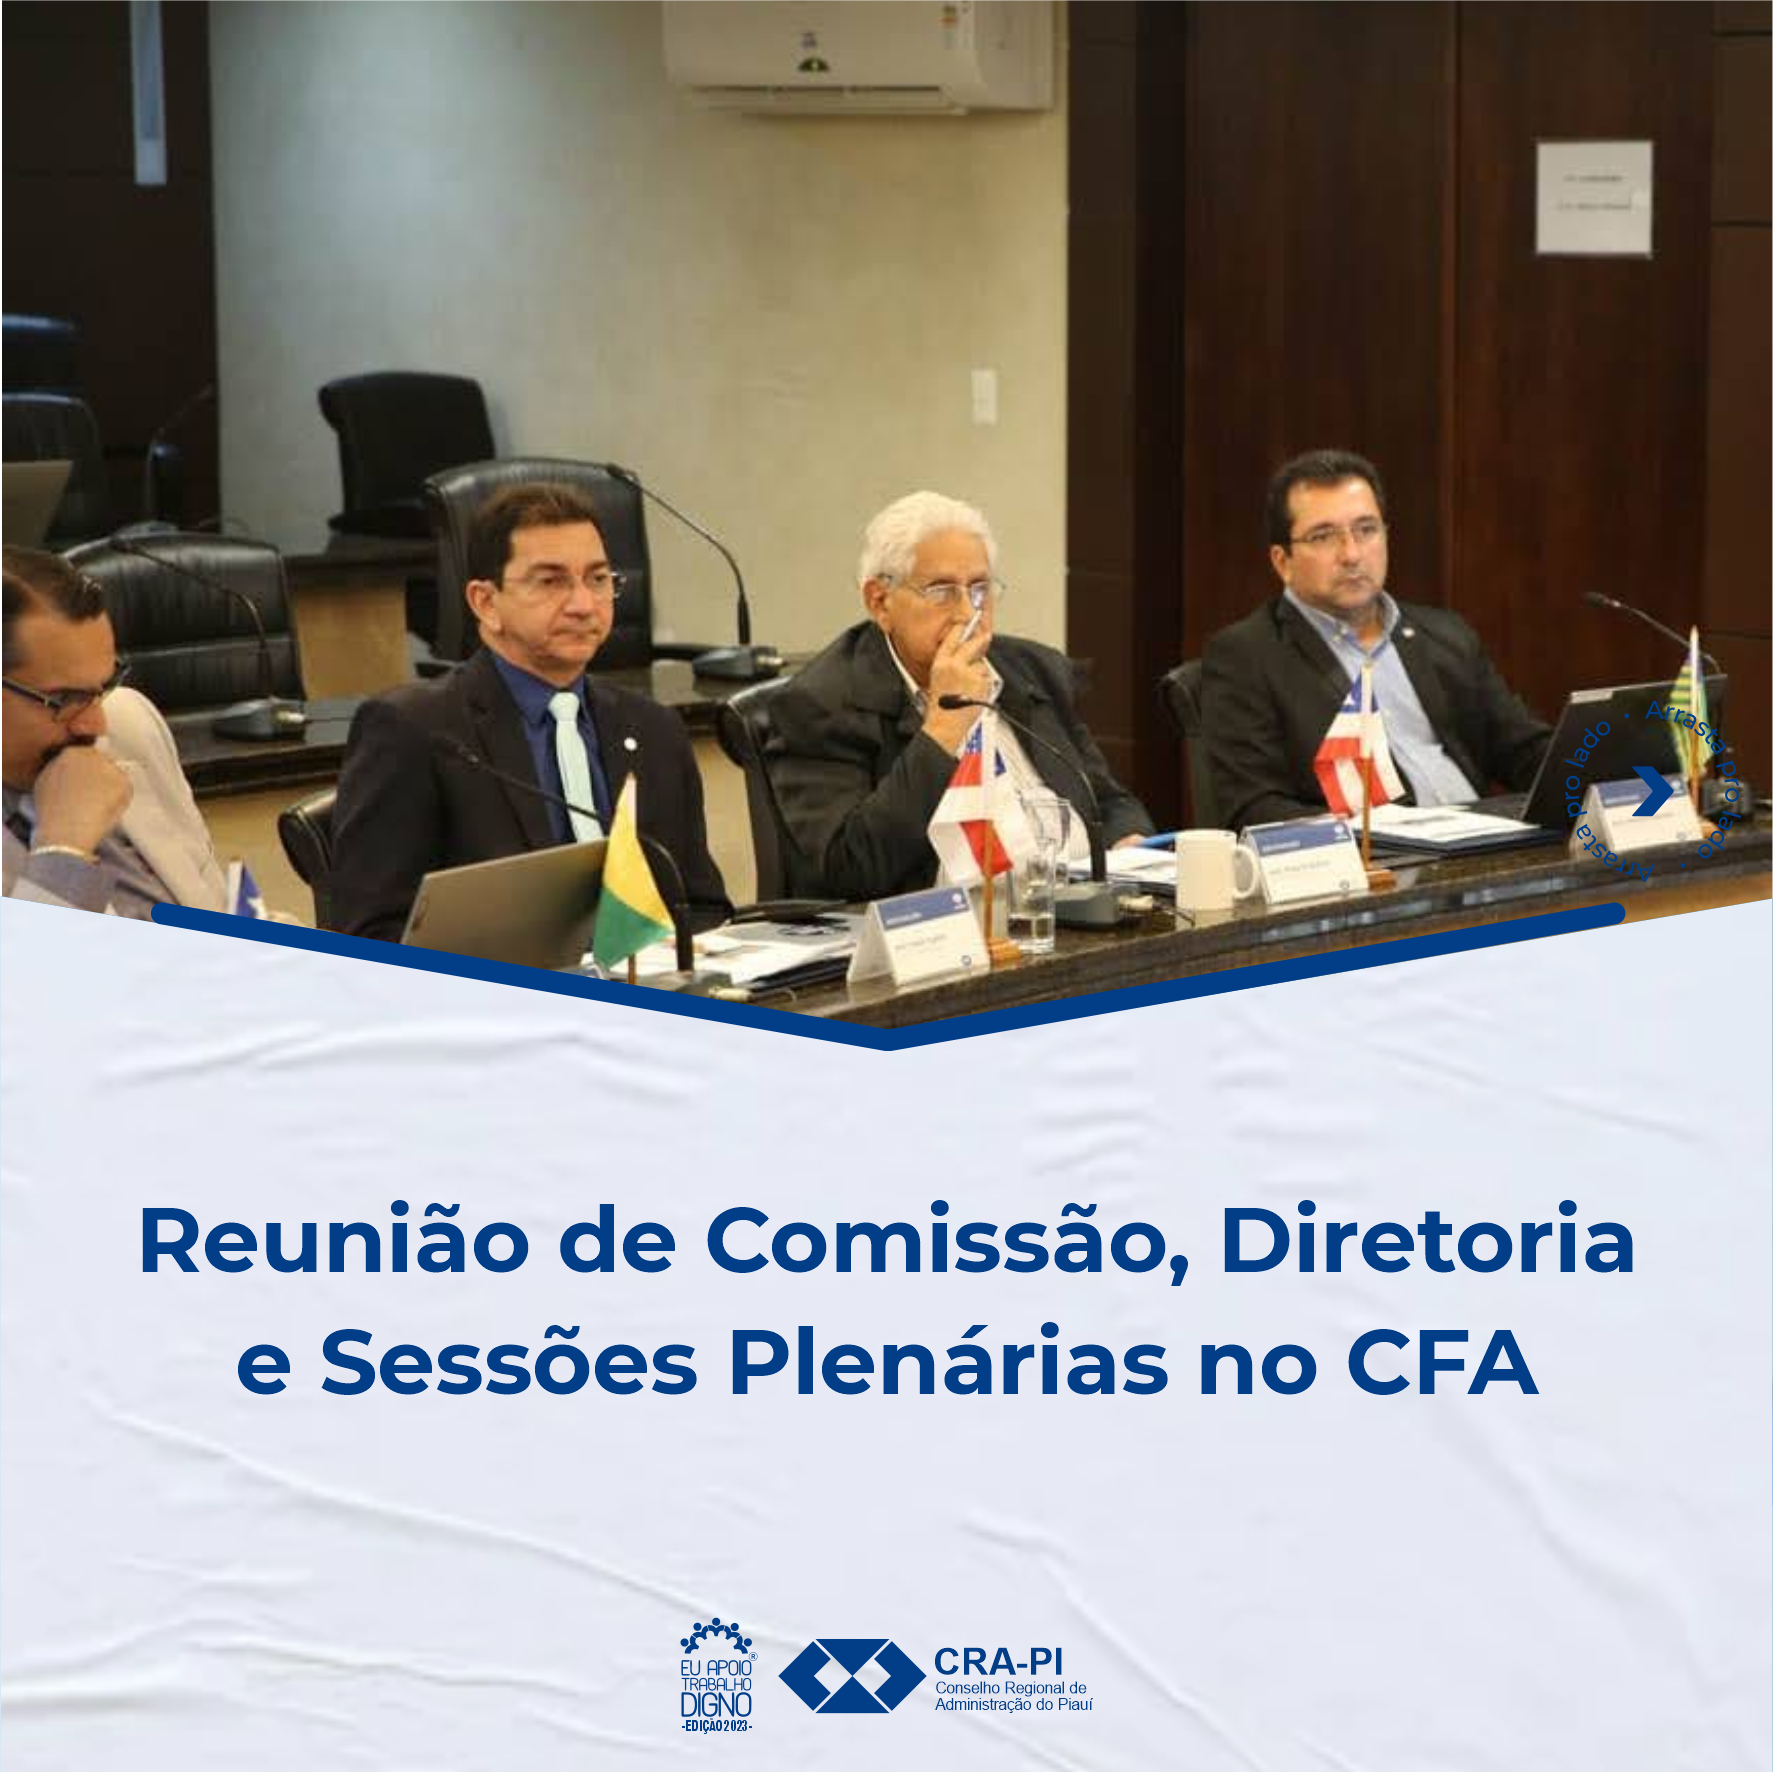 Reunião de Comissão, Diretoria e Sessões Plenárias no CFA